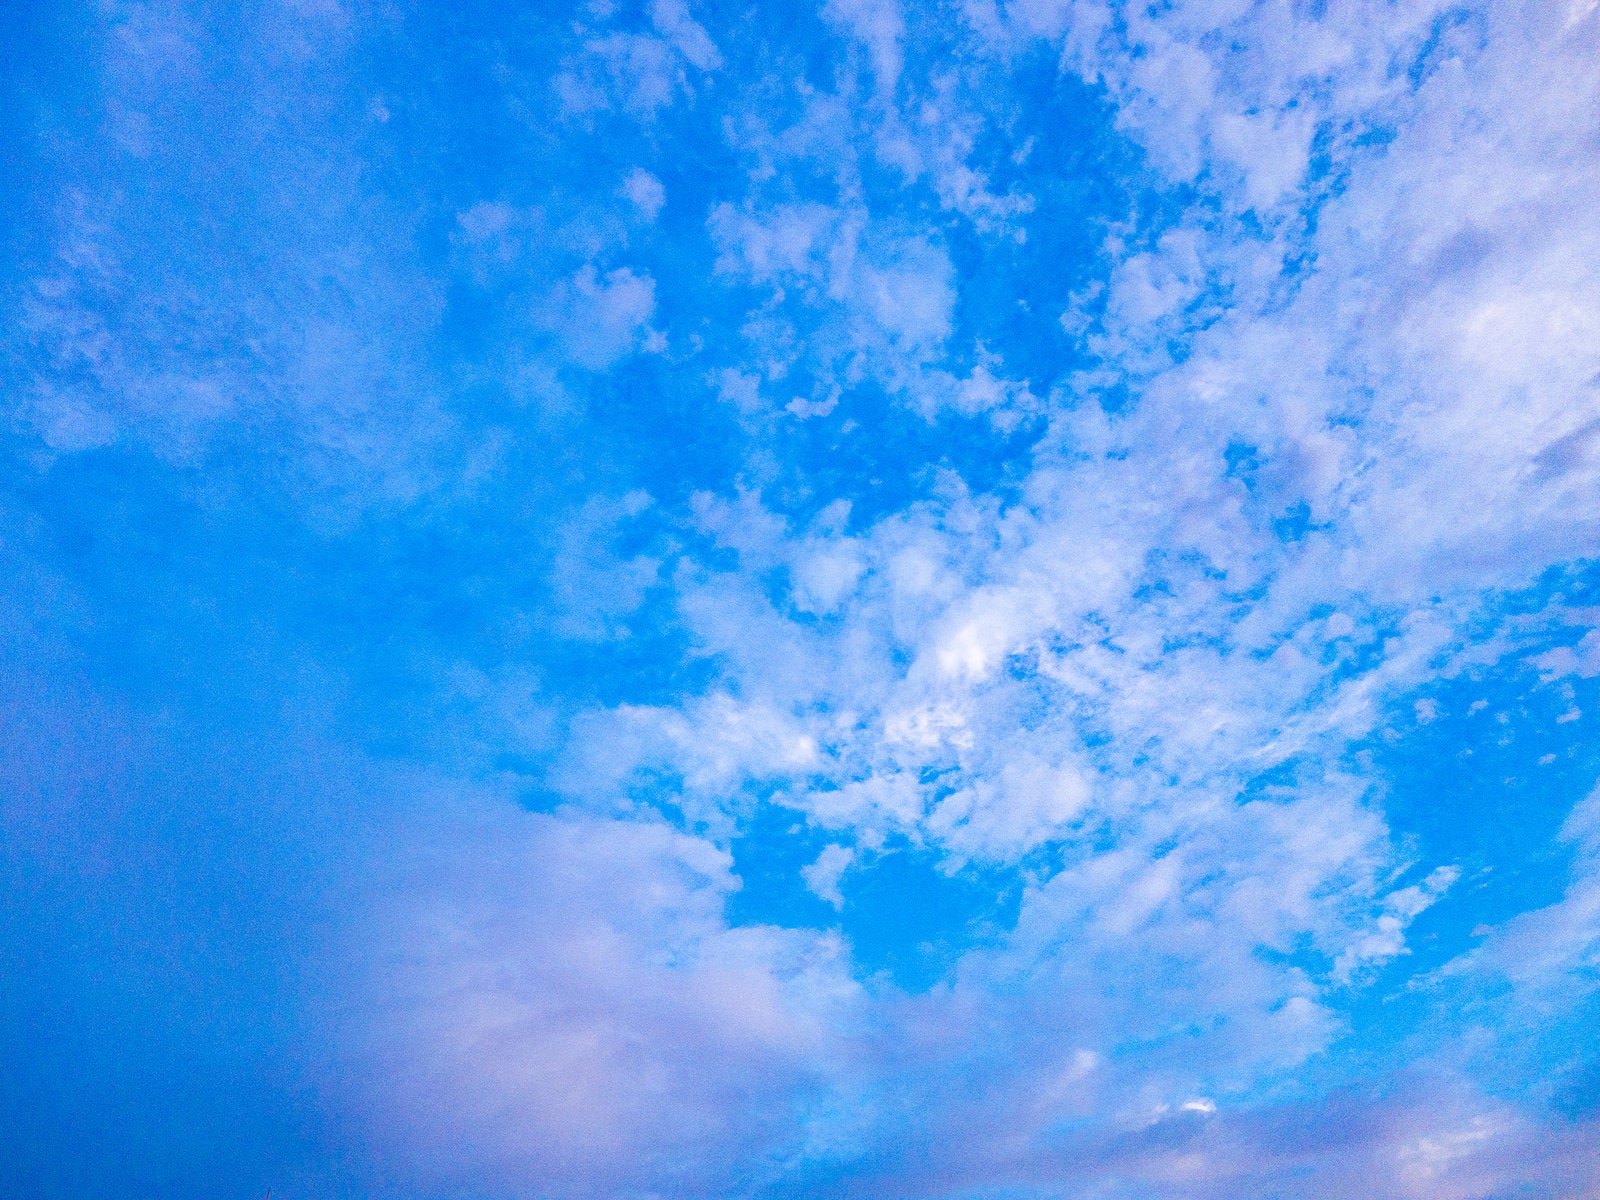 「青い空とまばらに浮かぶ雲」の写真